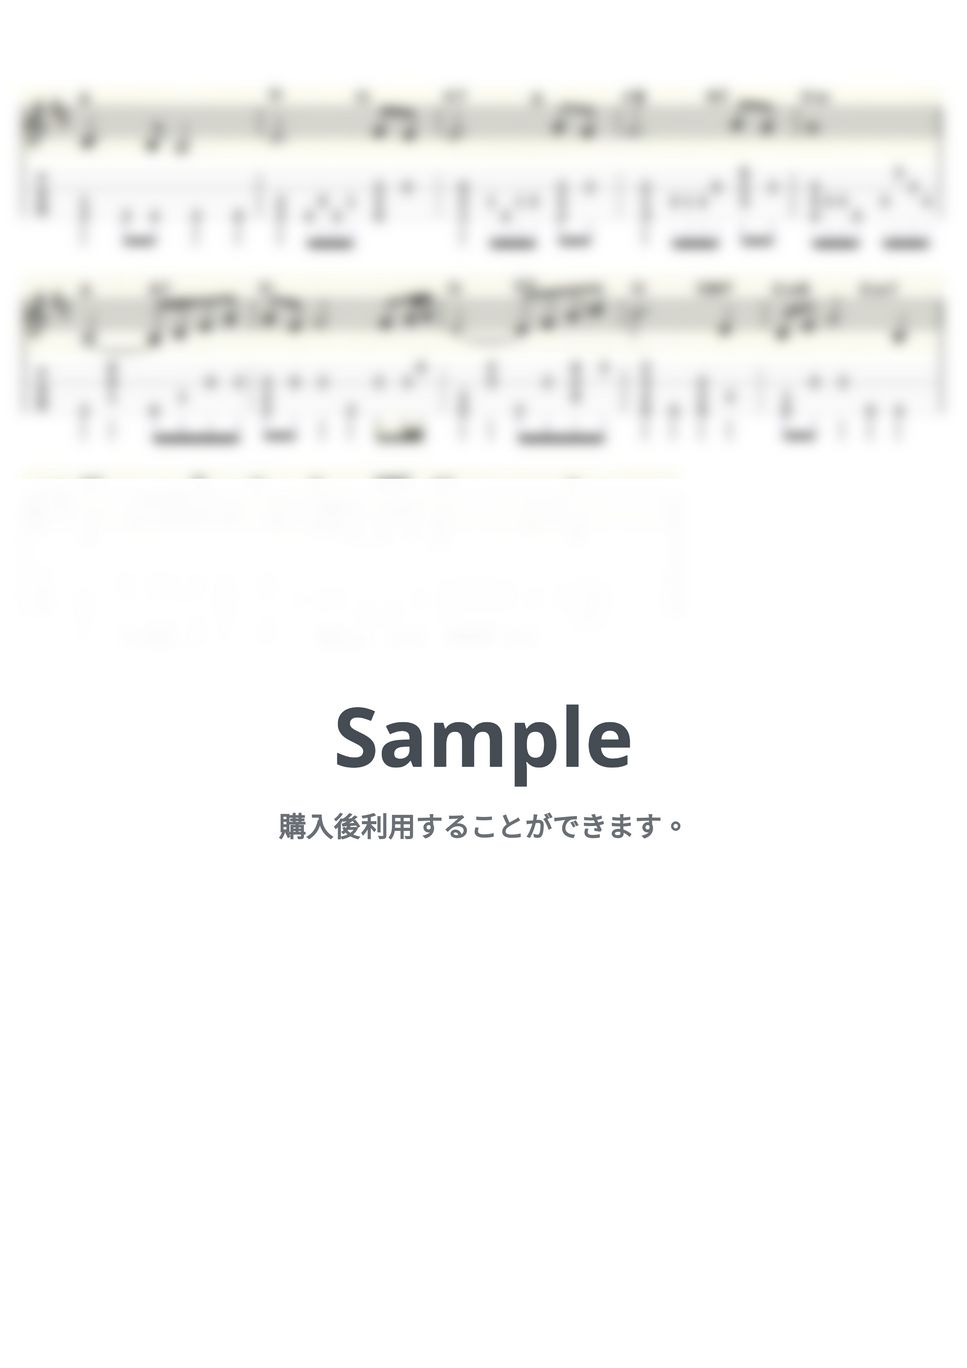 J.S.バッハ - G線上のアリア (ｳｸﾚﾚｿﾛ / Low-G / 中級) by ukulelepapa